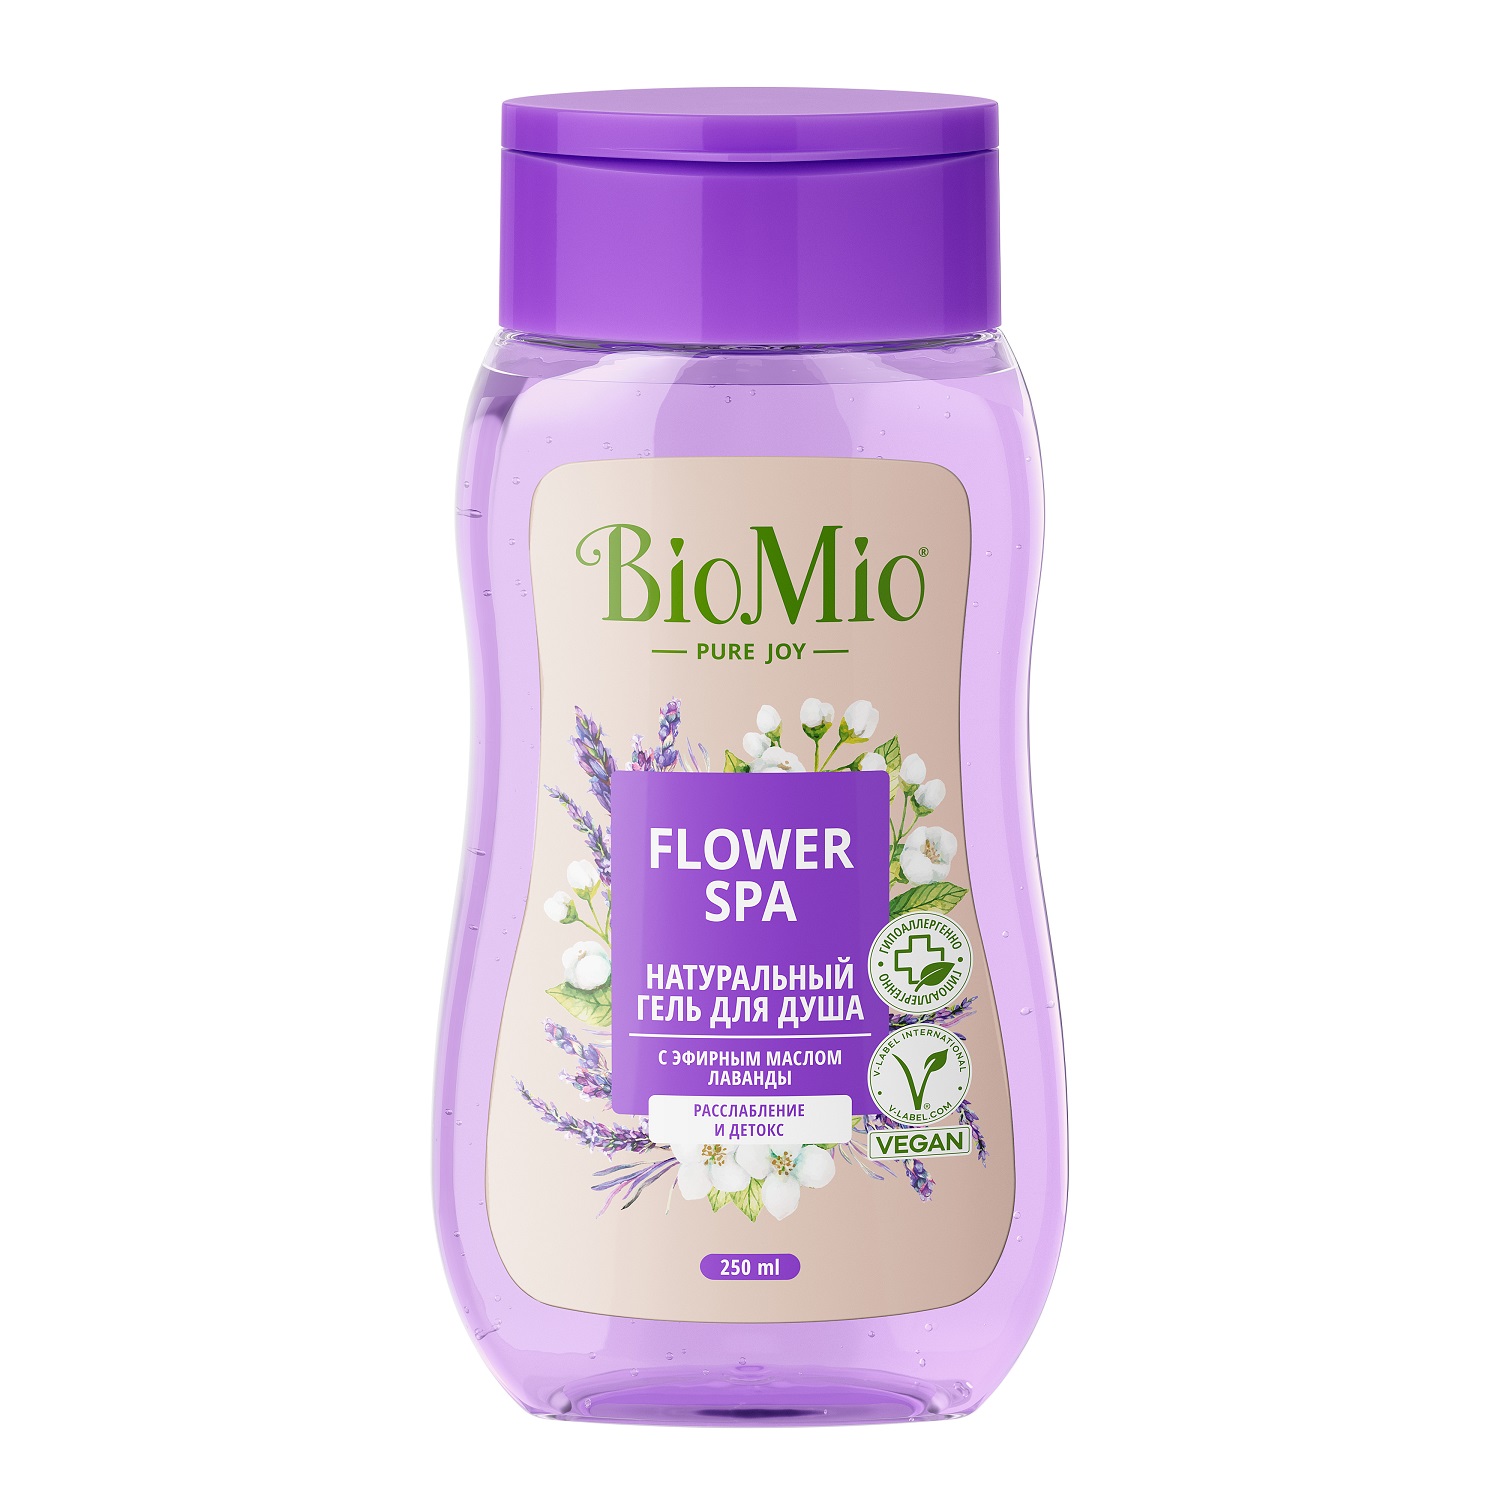 BioMio Гель для душа с эфирными маслами лаванды Flower Spa 3+, 250 мл (BioMio, Для ванны и душа) biomio гель для душа с эфирными маслами апельсина и бергамота citrus energy 3 2 х 250 мл biomio для ванны и душа